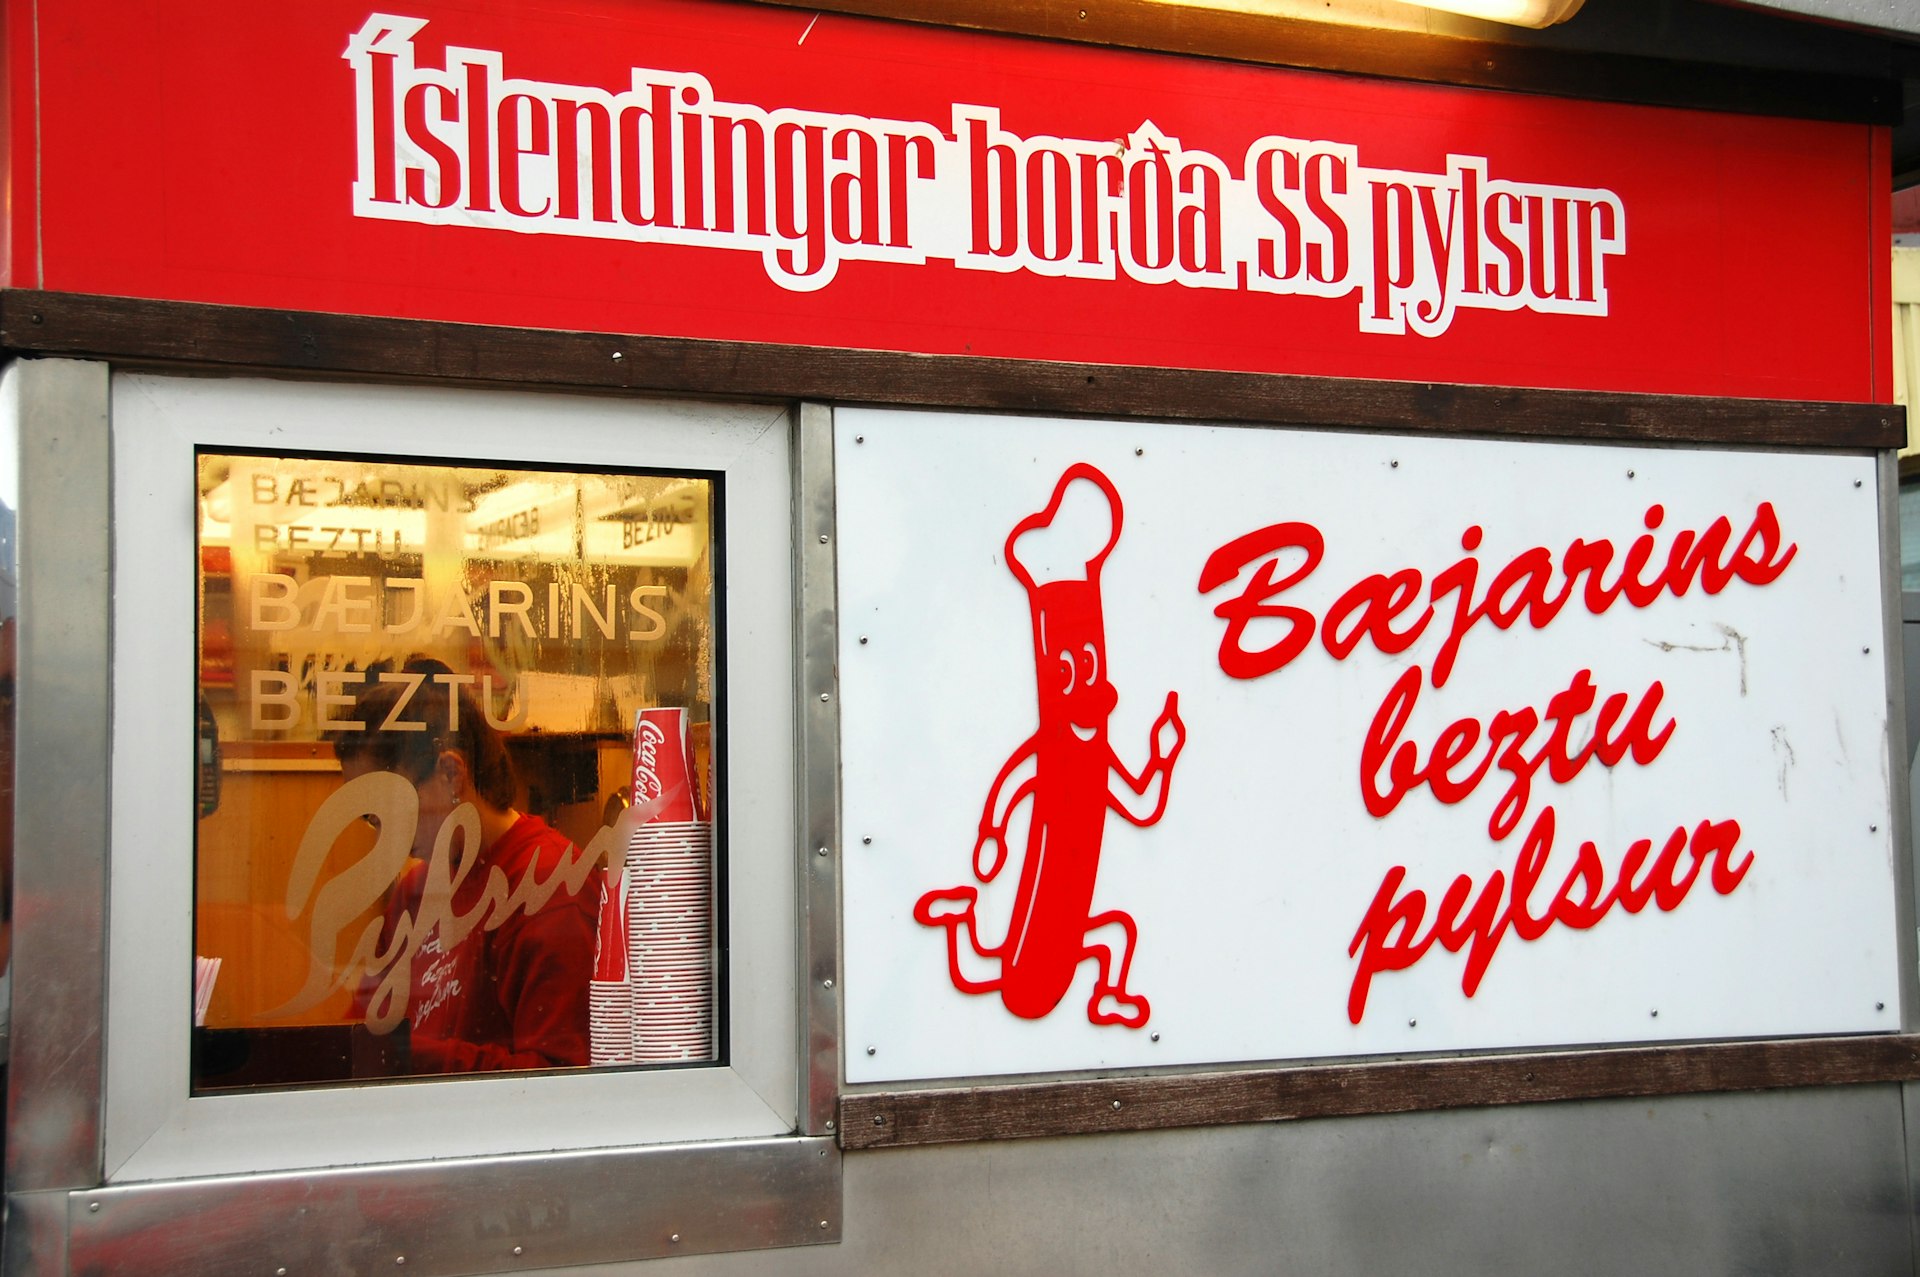 Baejarins Hot Dog Stand in Reykjavik, Iceland